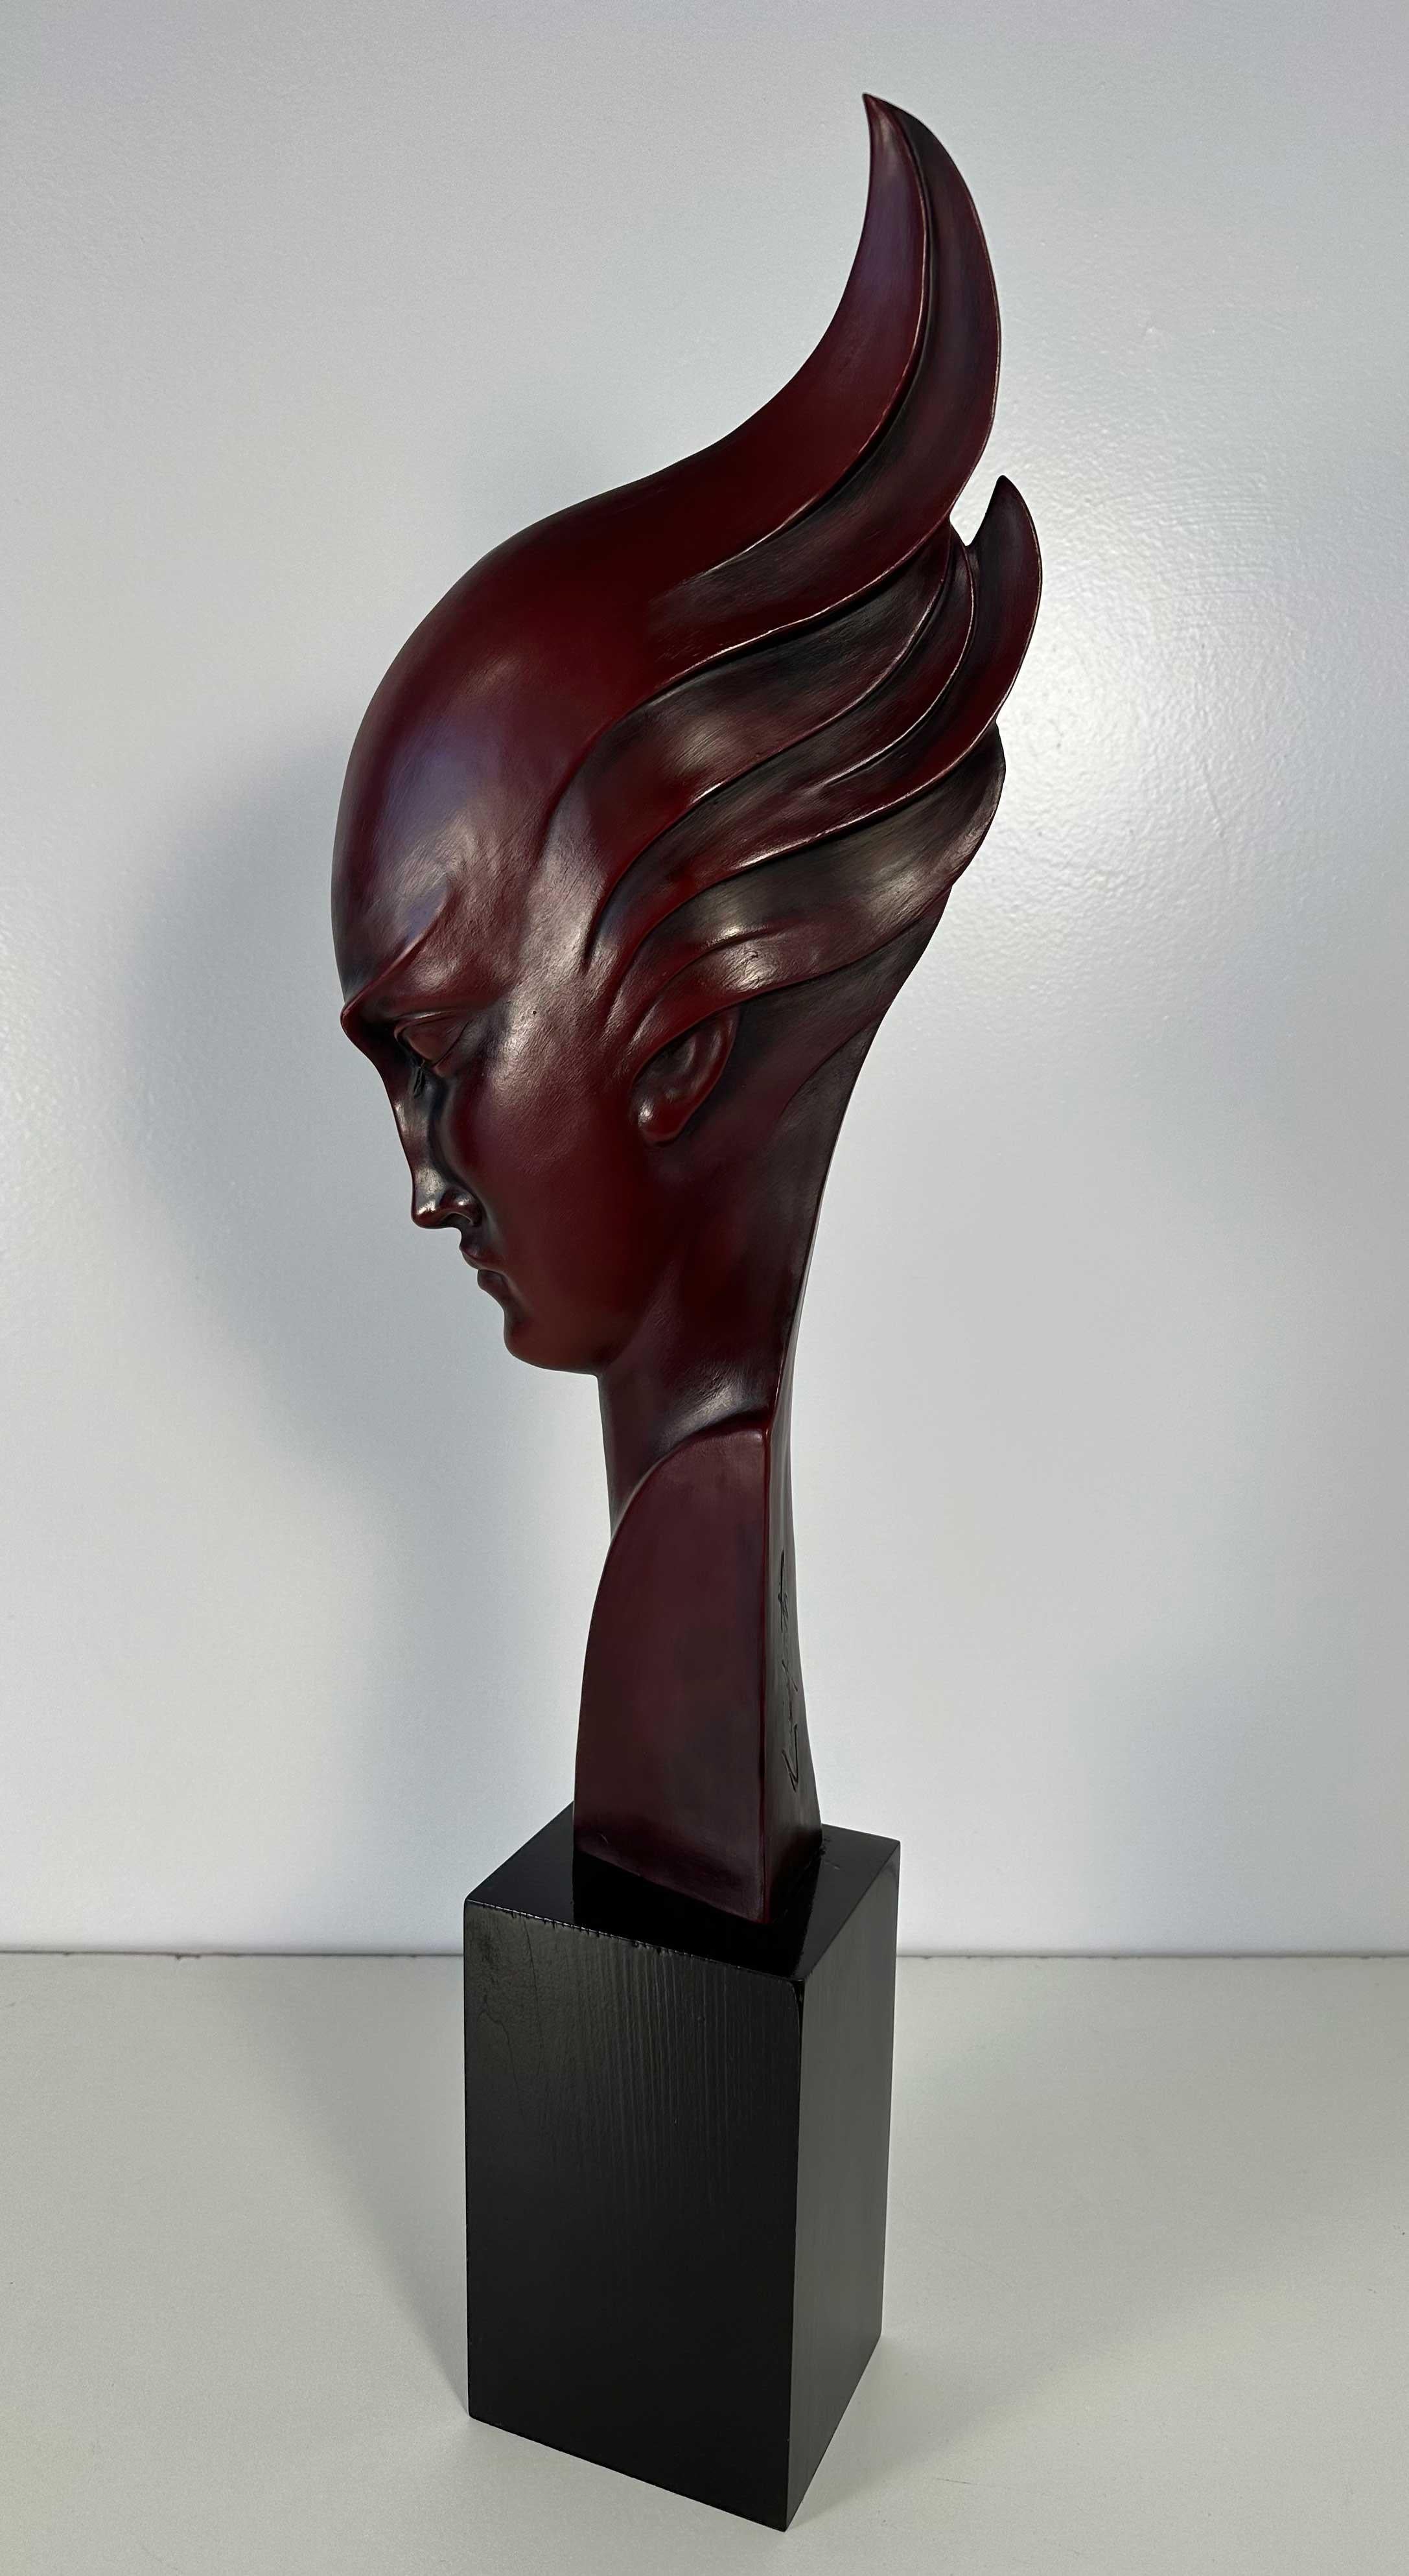 Cette sculpture Art déco a été produite en Italie, et plus précisément à Milan, par Guido Cacciapuoti dans les années 1930. 

La base est en bois ébonisé et la sculpture, un visage de femme stylisé typique de l'Art déco, est en grès cérame